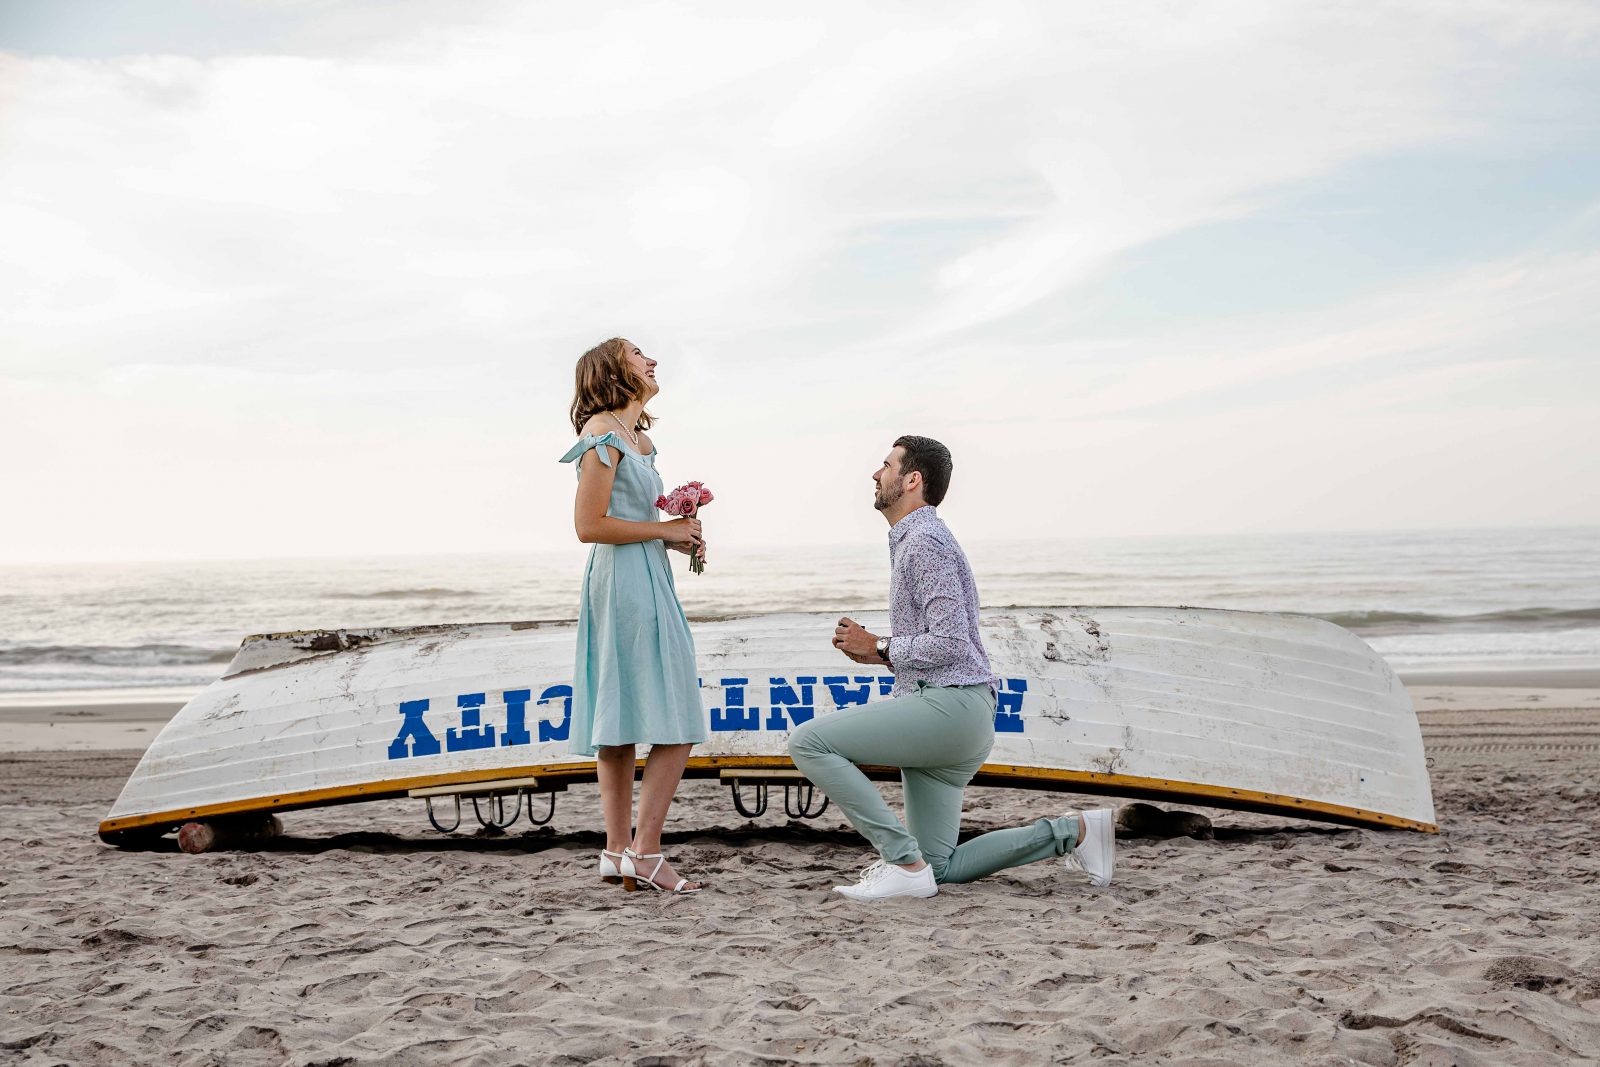 Atlantic City Surprise Proposal